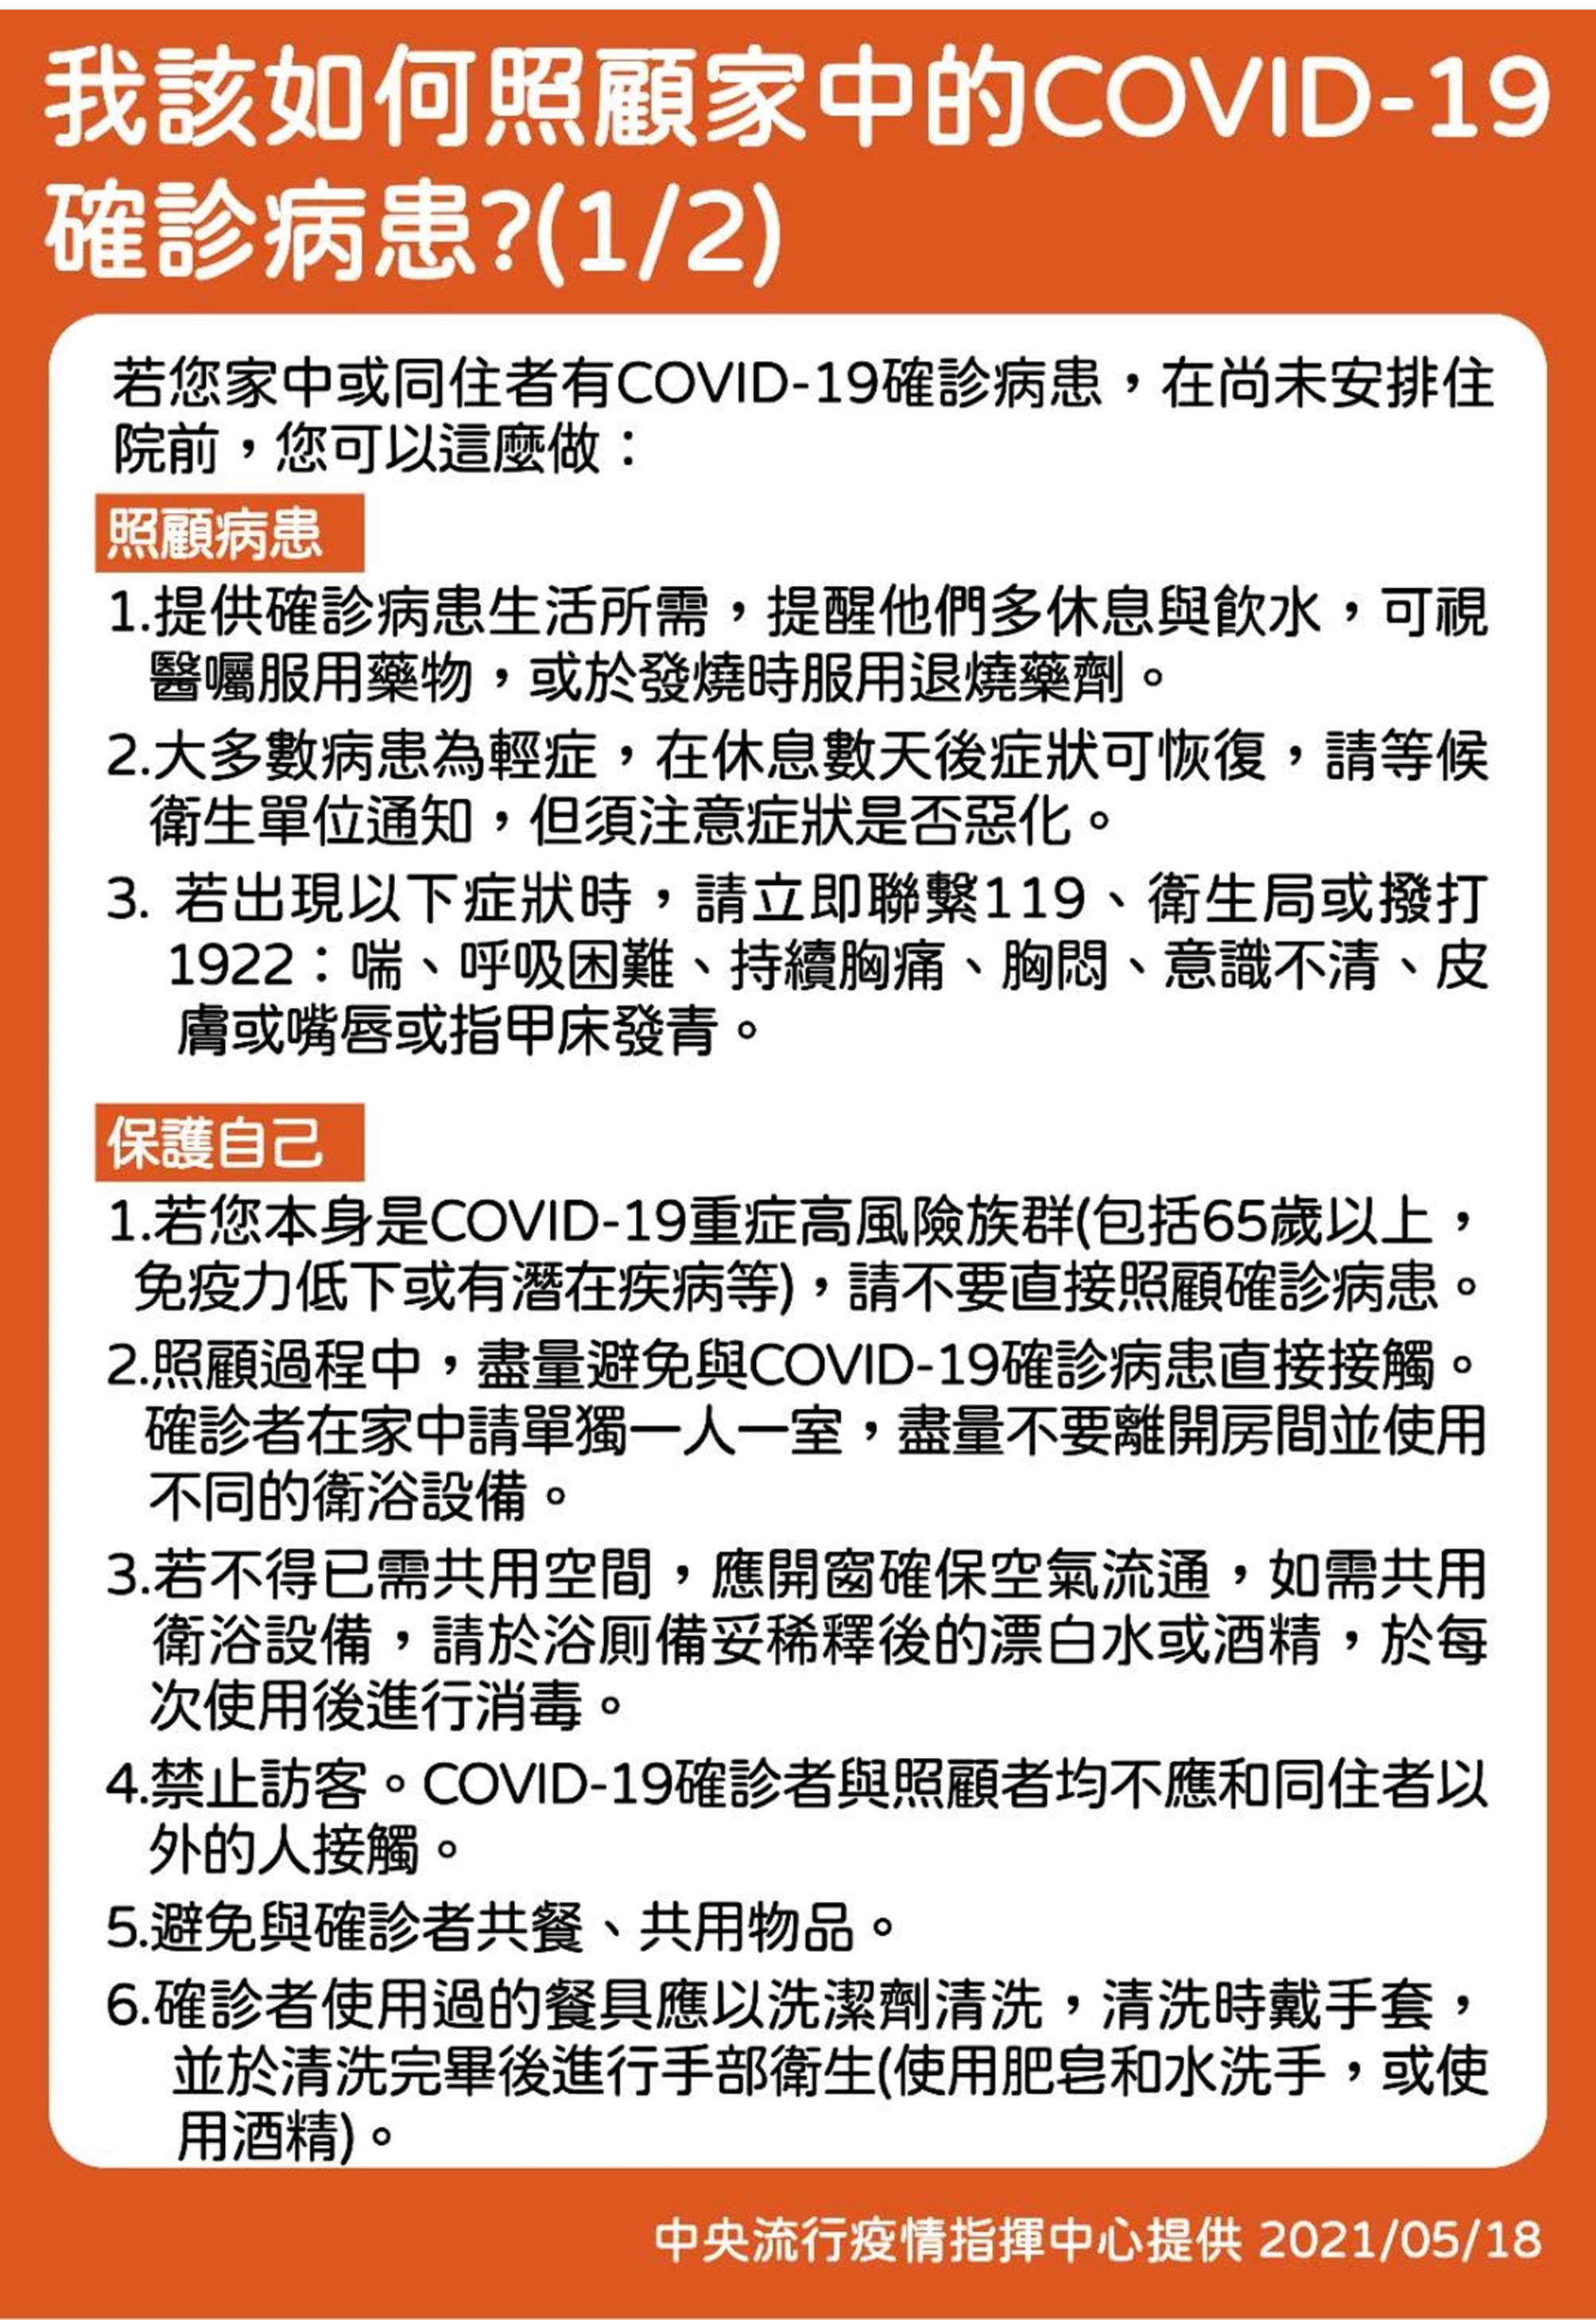 1.我該如何照顧家中的COVID-19確診病患1-2-中文.JPG